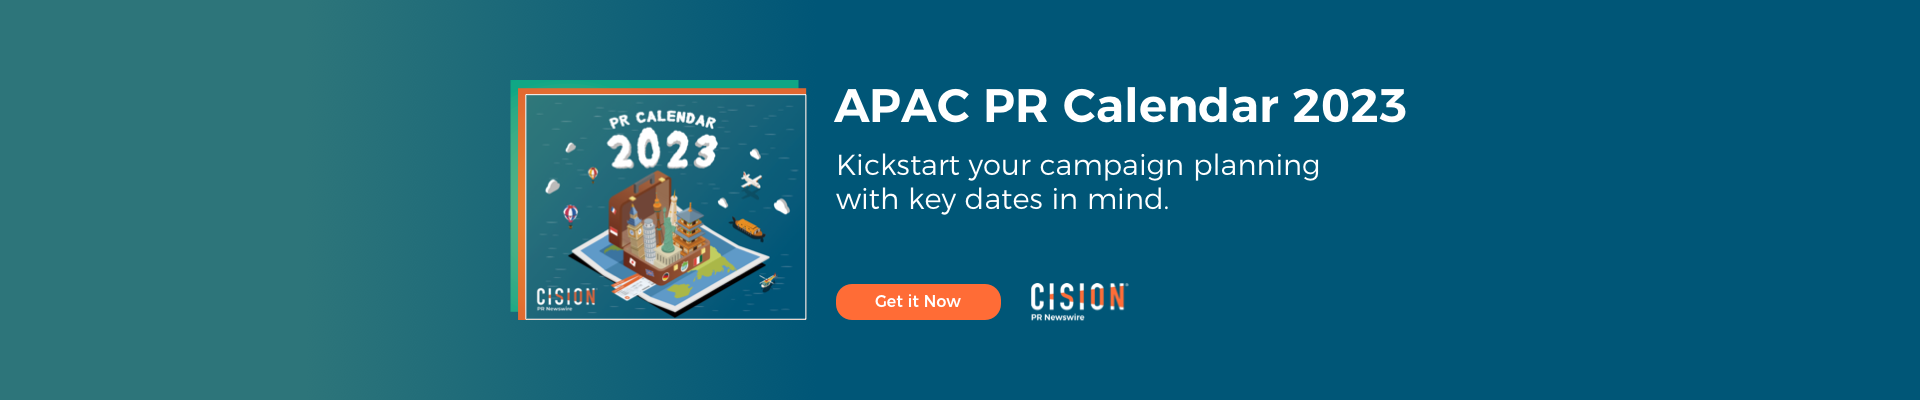 APAC PR Calendar 2023